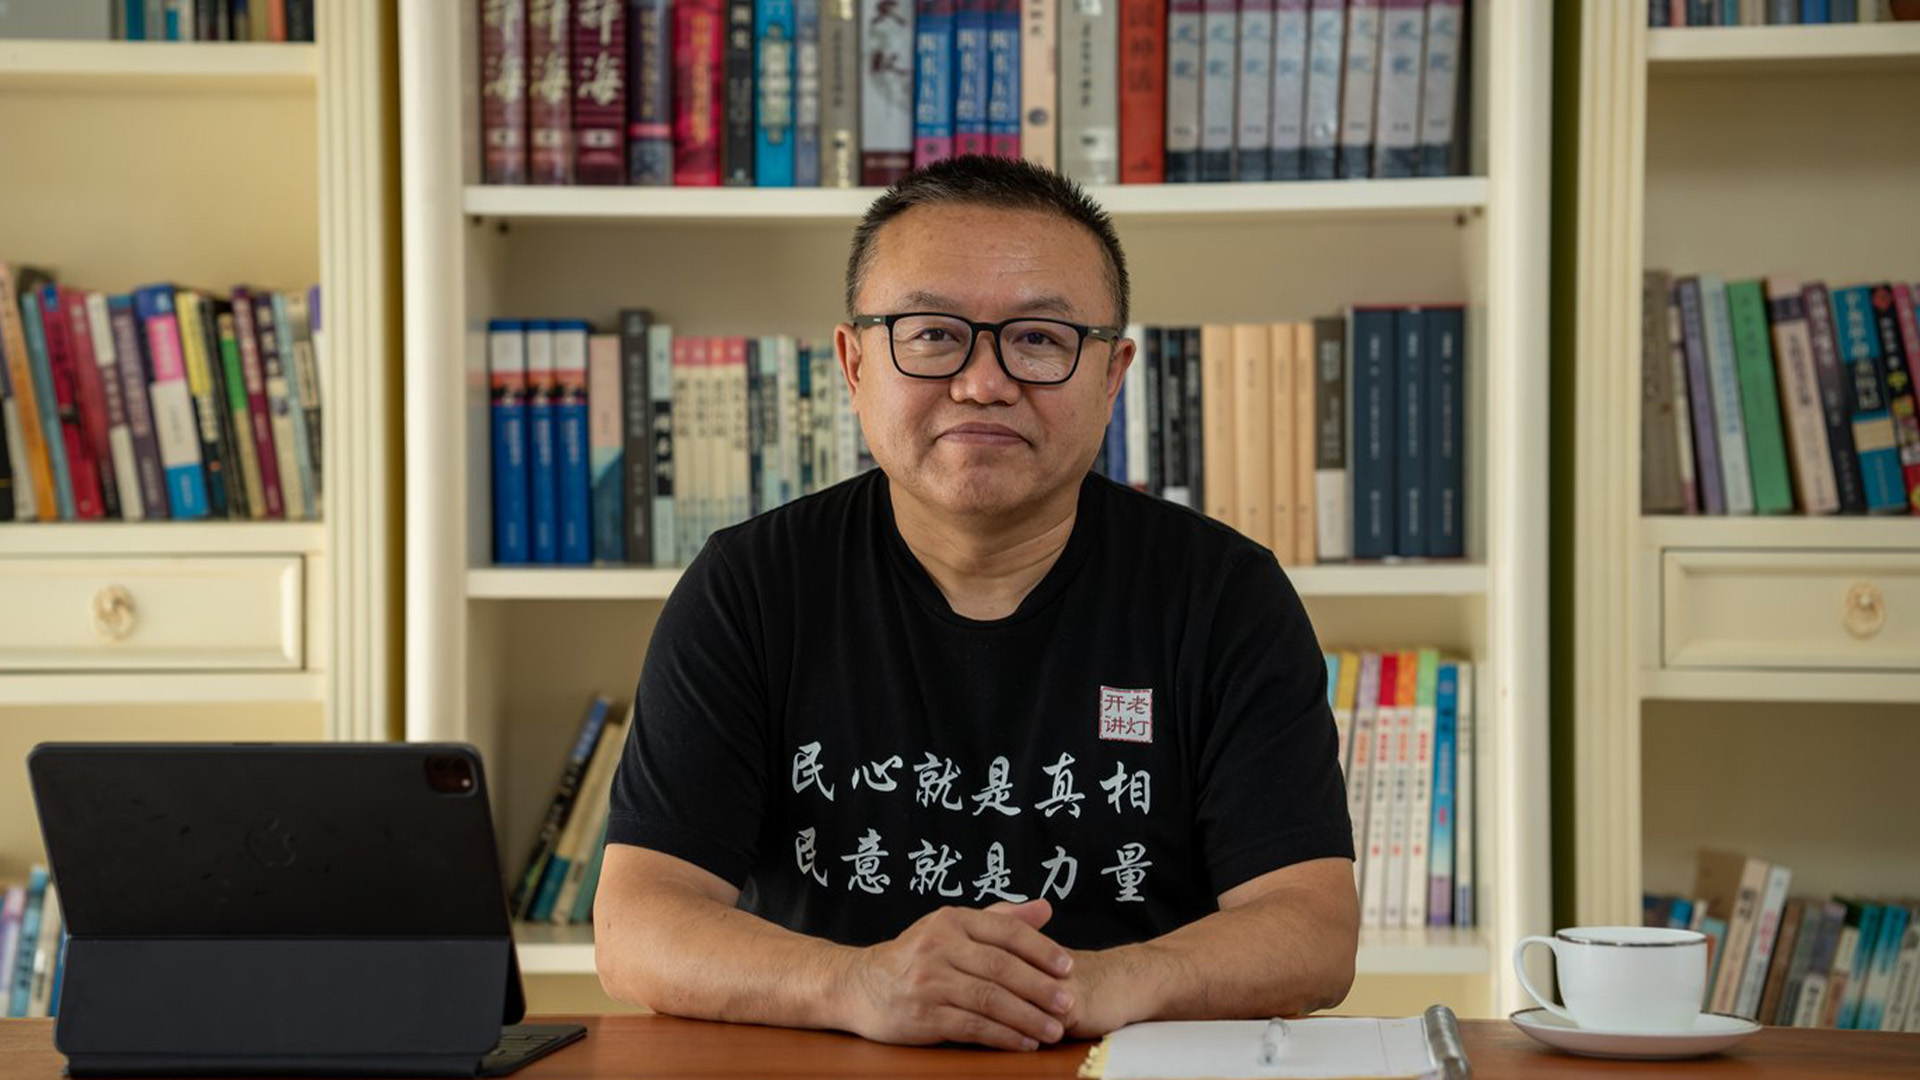 Liu Xin, un homme de la Colombie-Britannique connu pour ses critiques du gouvernement chinois, dit être la cible d'une campagne de salissage impliquant de fausses vidéos.